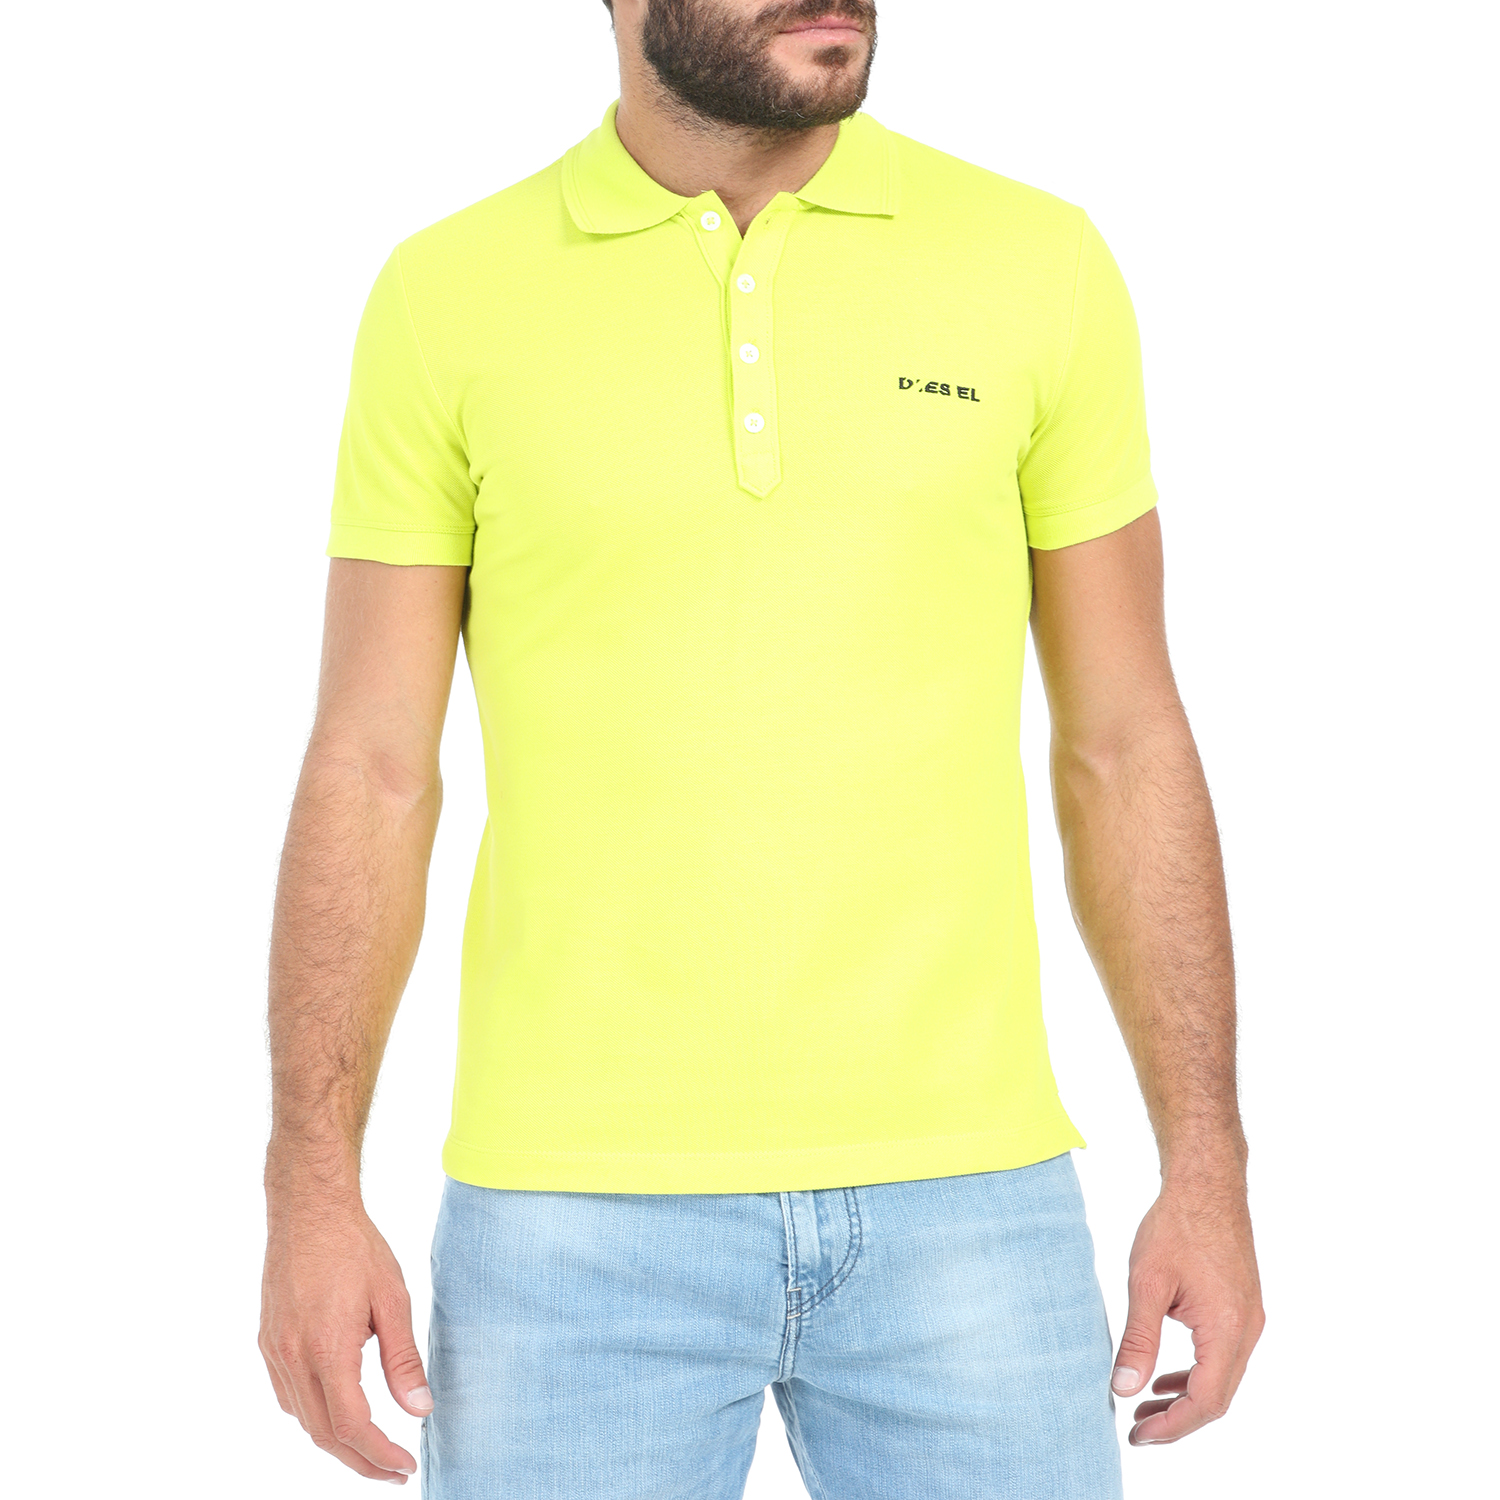 Ανδρικά/Ρούχα/Μπλούζες/Πόλο DIESEL - Ανδρική polo μπλούζα DIESEL T-HEAL-BROKEN-ST POLO κίτρινη